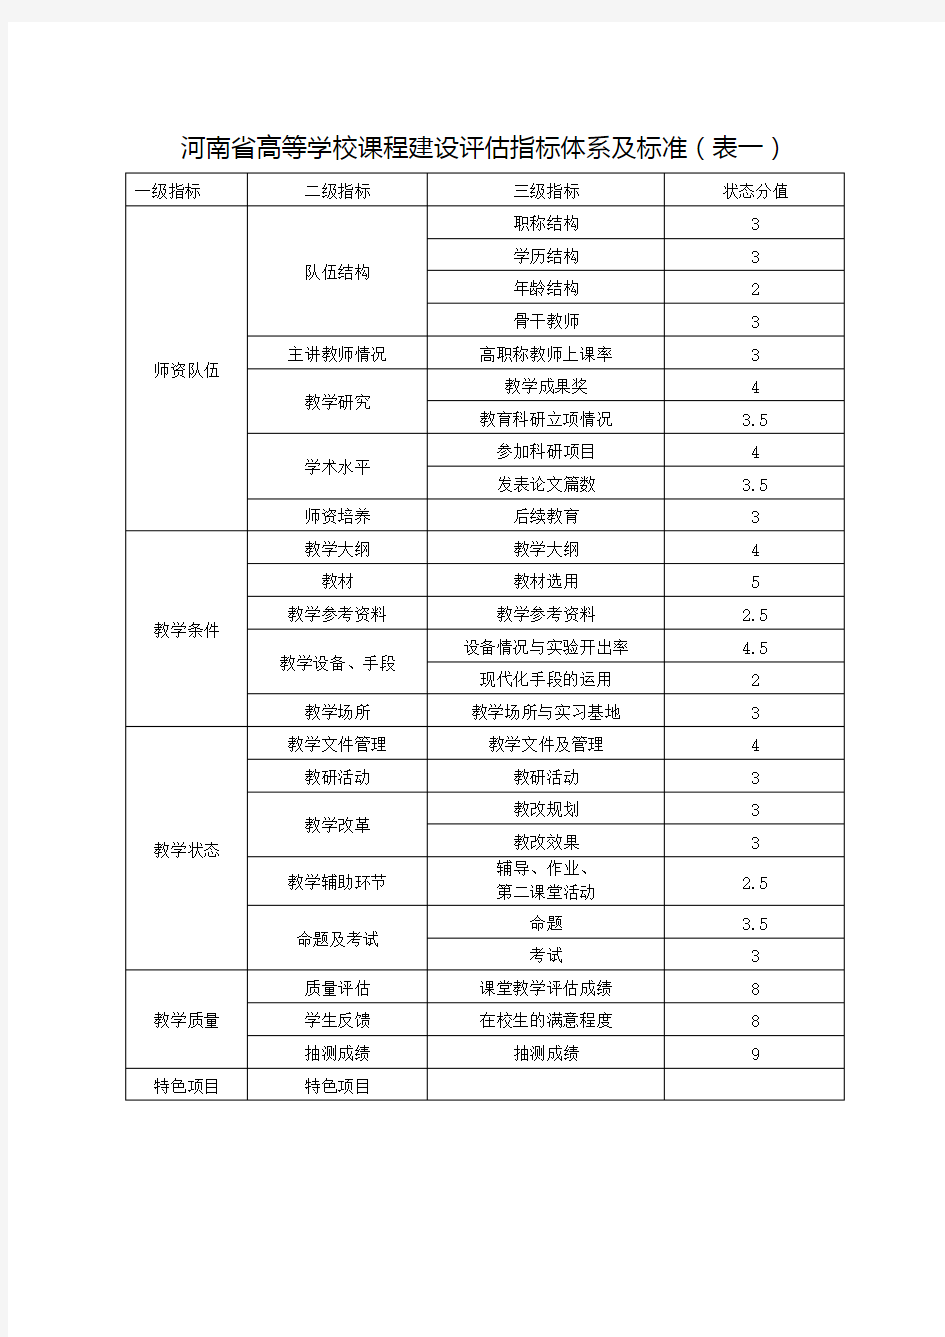 河南省高等学校课程建设评估指标体系及标准表